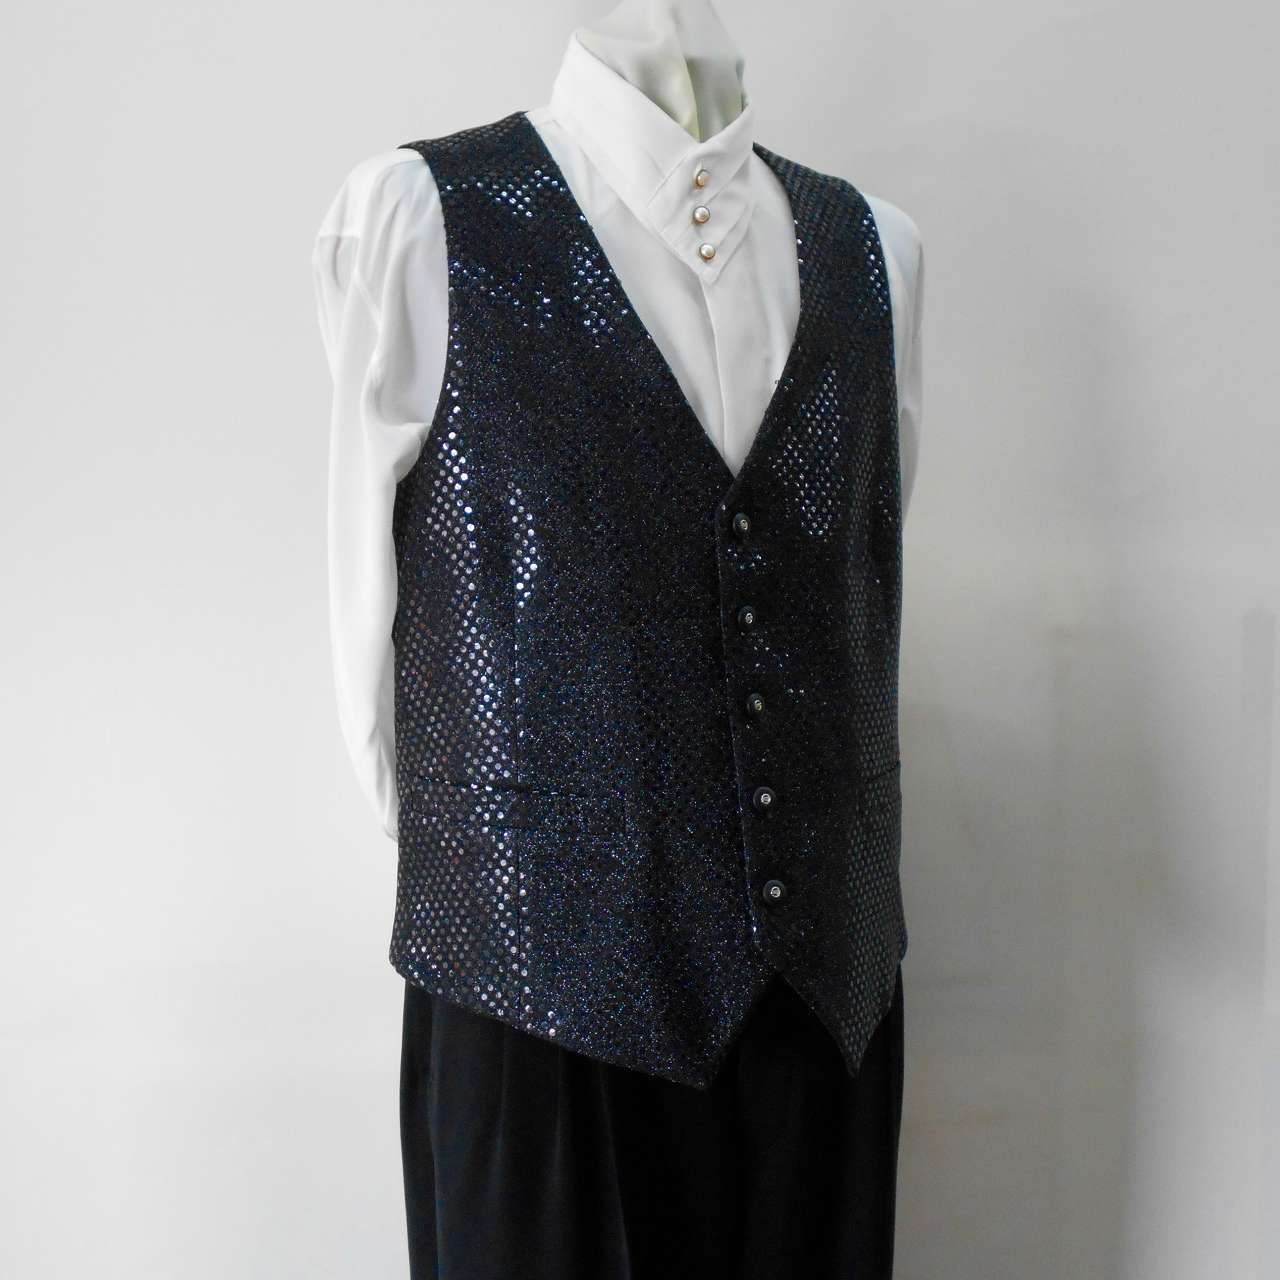 キラキラスパンコールベスト 黒 It is a vest made from sequins ...